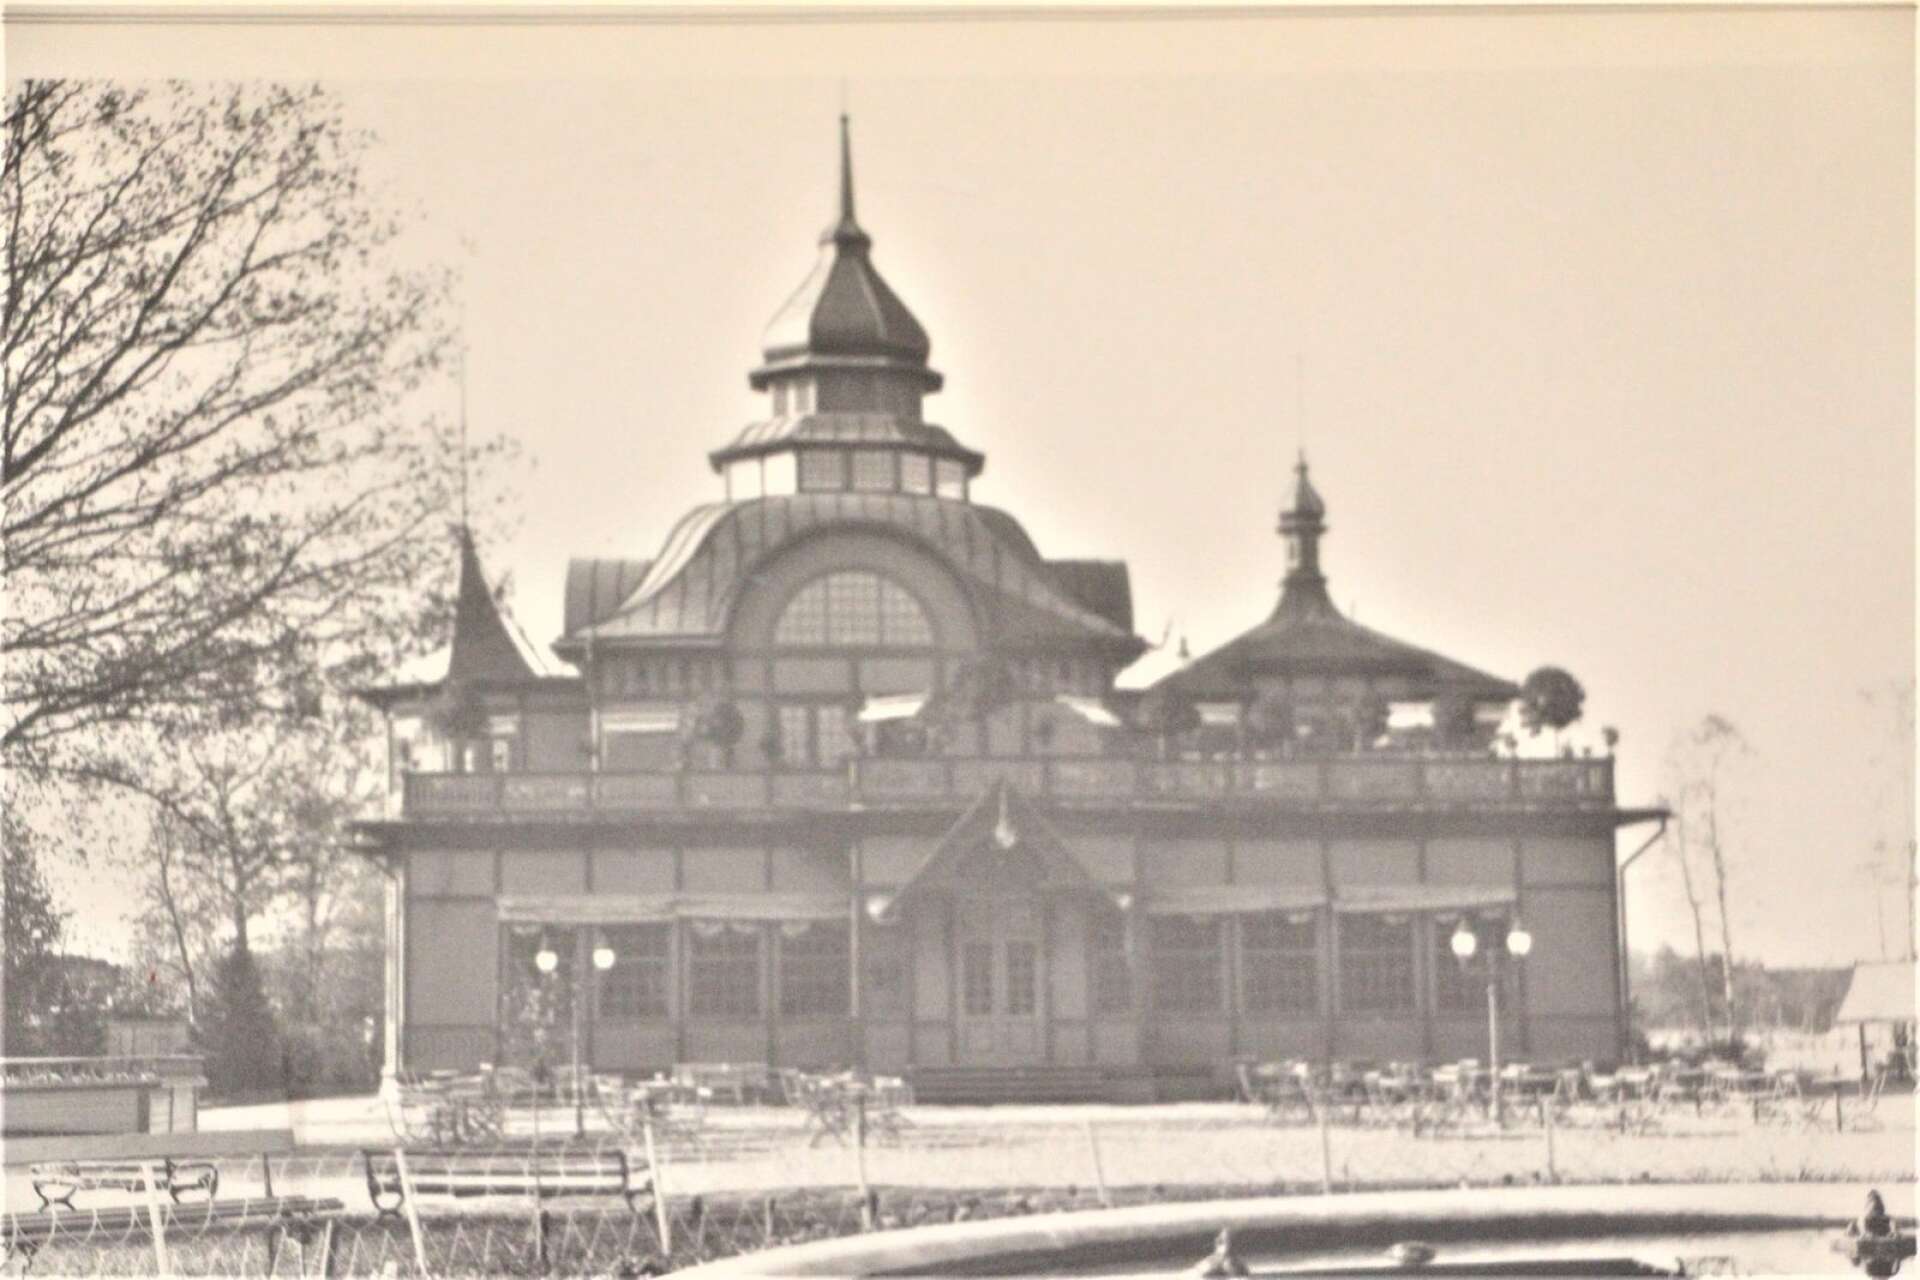 Natten till den 17 september 1959 bränner den så kallade Karlstadspyromanen ner Stadsträdgårdens fantastiska sommarrestaurang med tinnar och torn från slutet av 1800-talet.